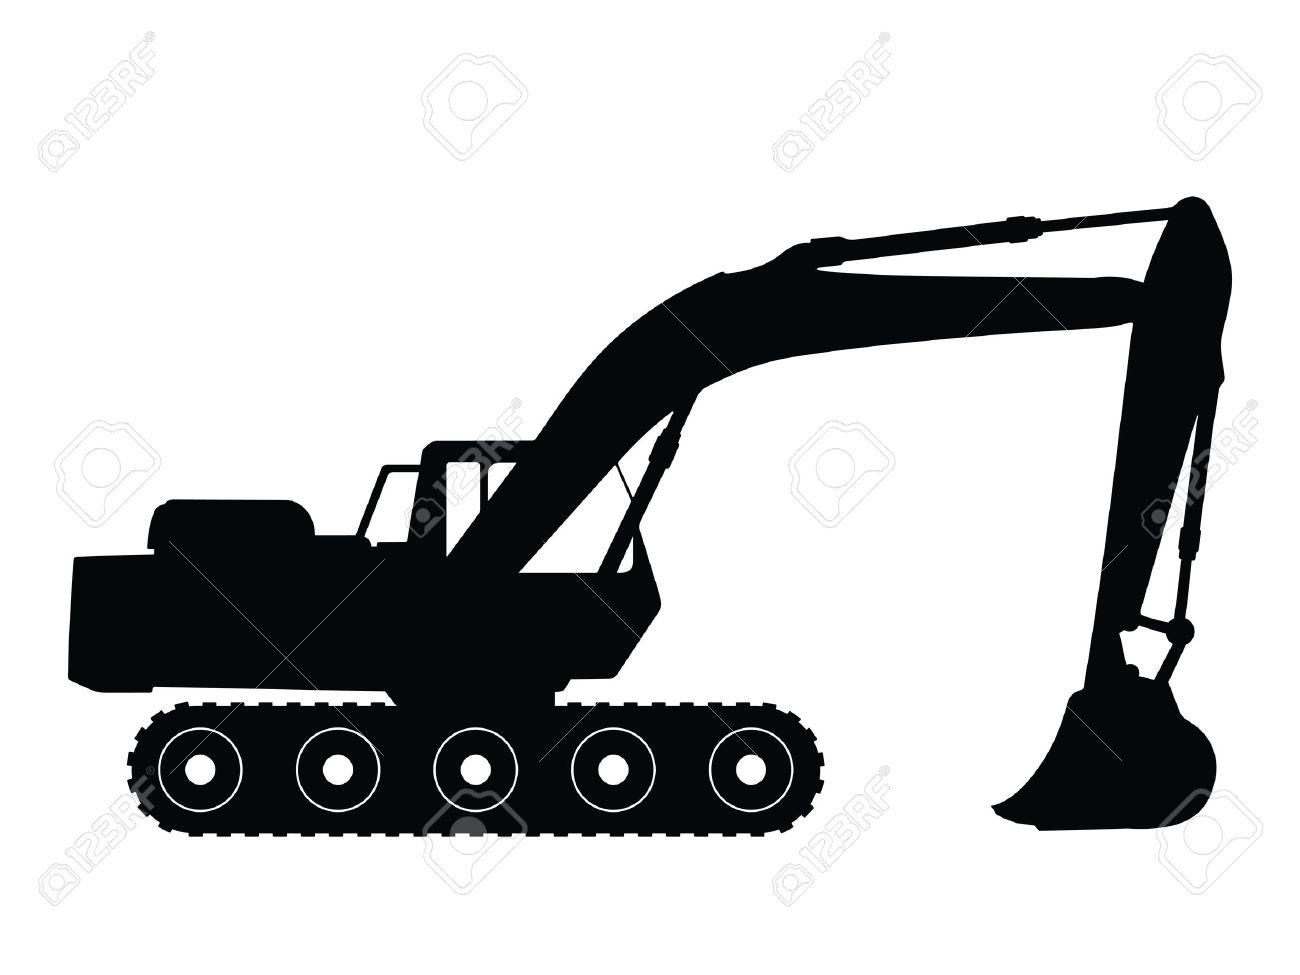 Bulldozer clipart silhouette. Track clip art at